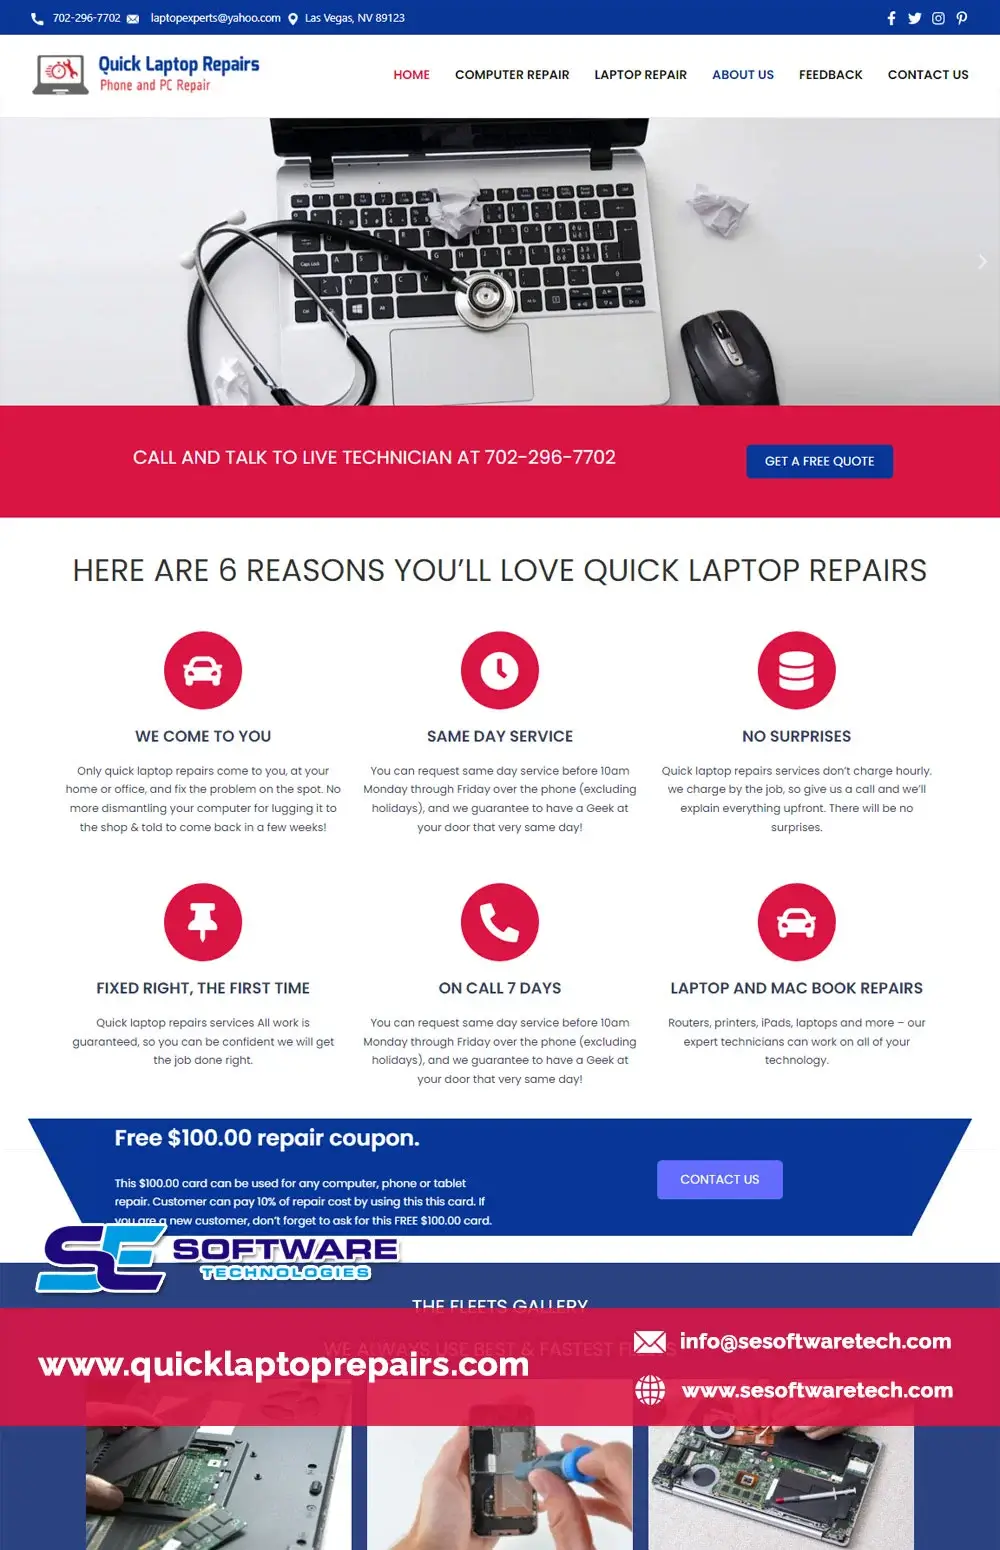 Professional Website Design for Quick Laptop Repair Businesses